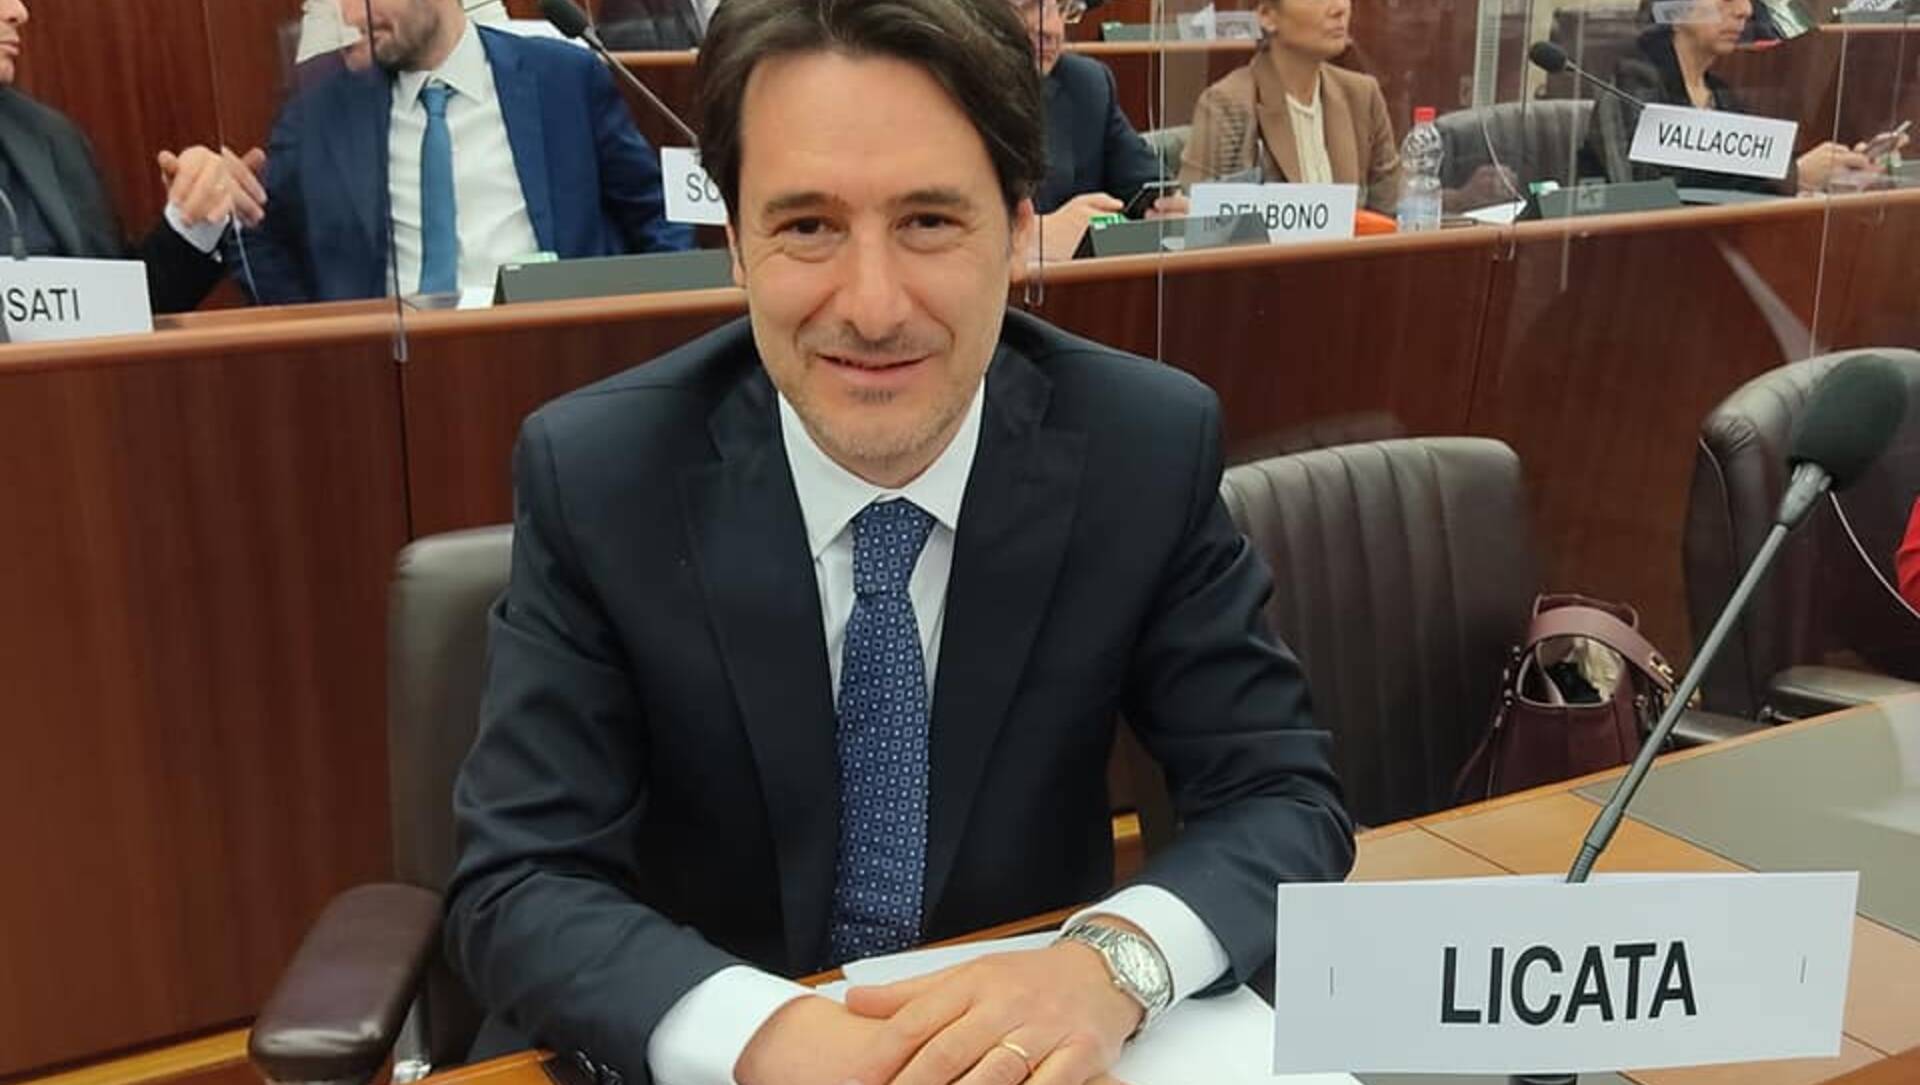 Finanziamenti alle nuove imprese, Licata (Italia Viva): “Nella risposta alla mia interpellanza Regione promette nuove risorse”